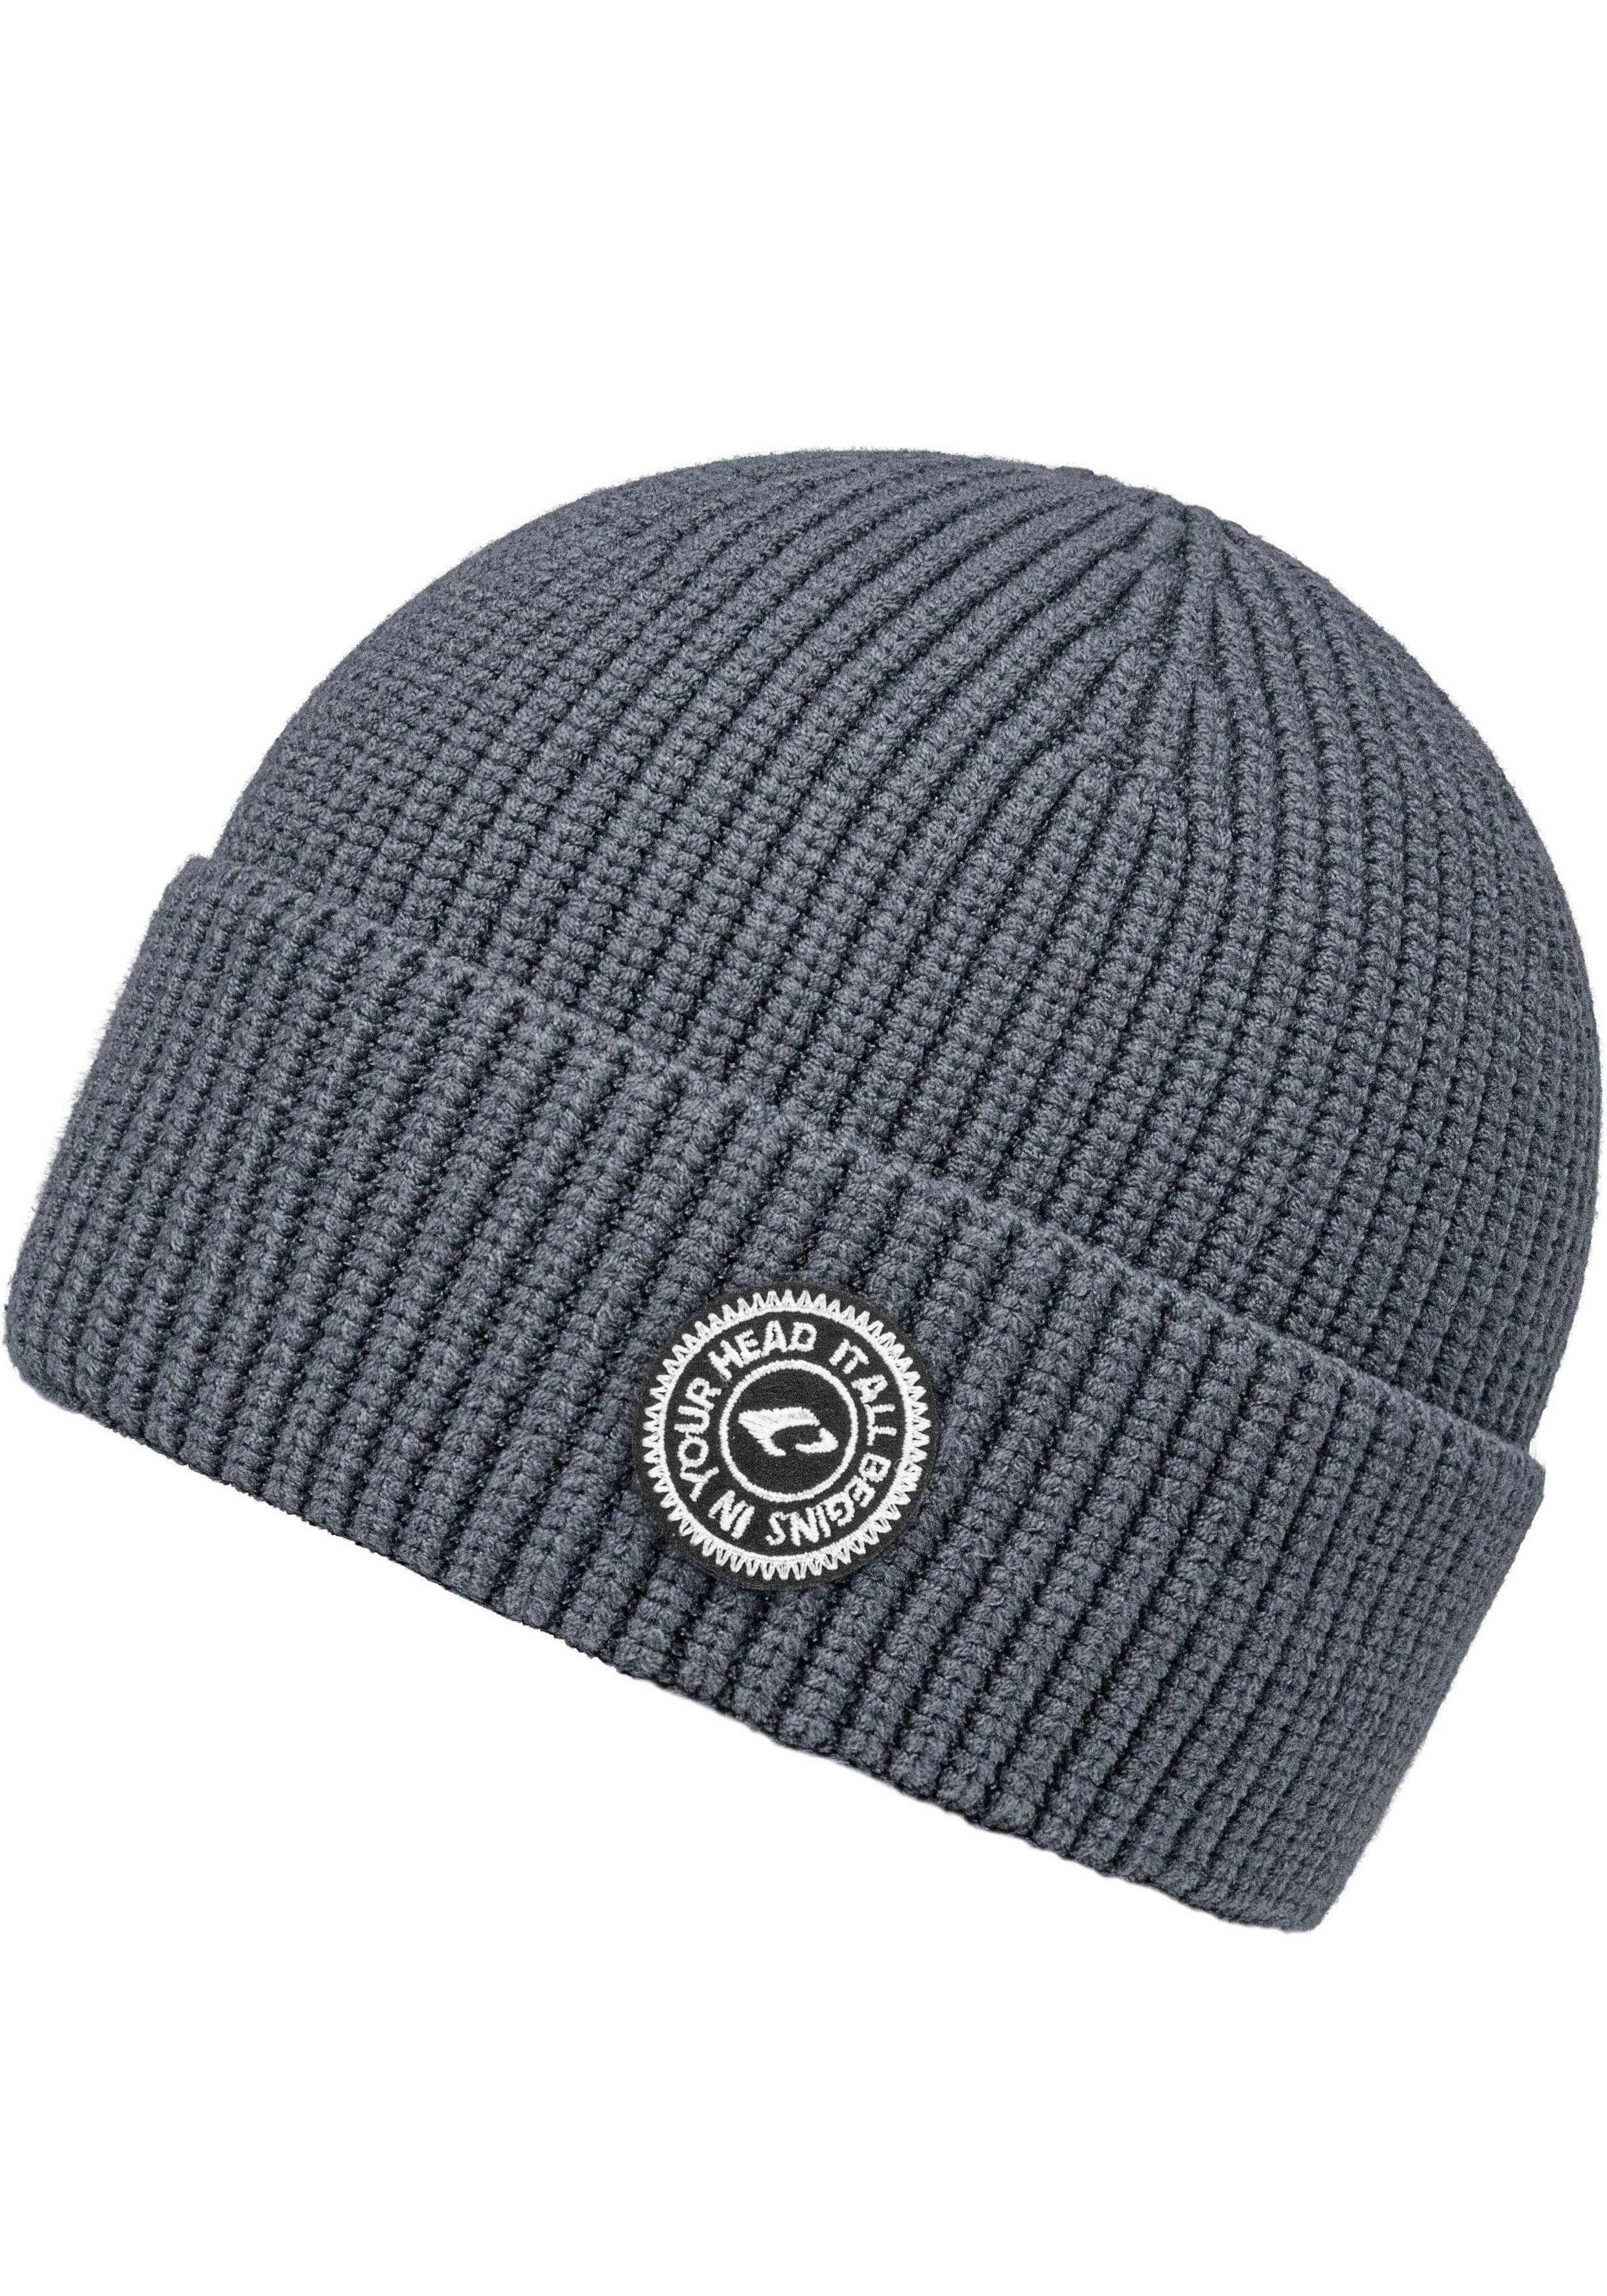 chillouts Strickmütze Jayden Hat One Size grey | Strickmützen